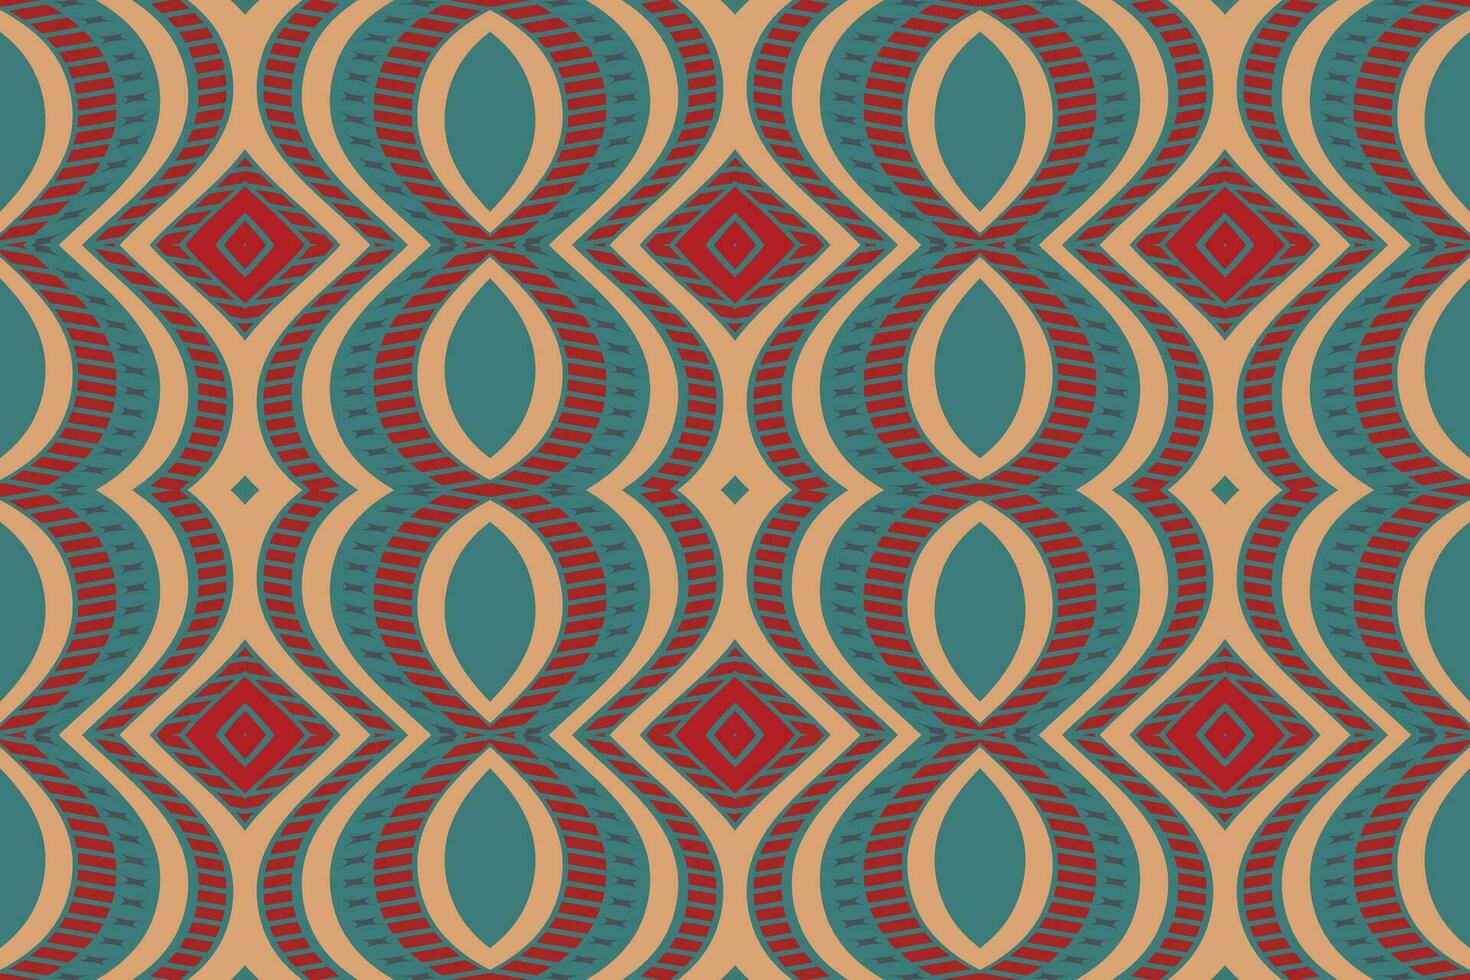 ikat damast- paisley broderi bakgrund. ikat sömlös mönster geometrisk etnisk orientalisk mönster traditionell.aztec stil abstrakt vektor design för textur, tyg, kläder, inslagning, sarong.